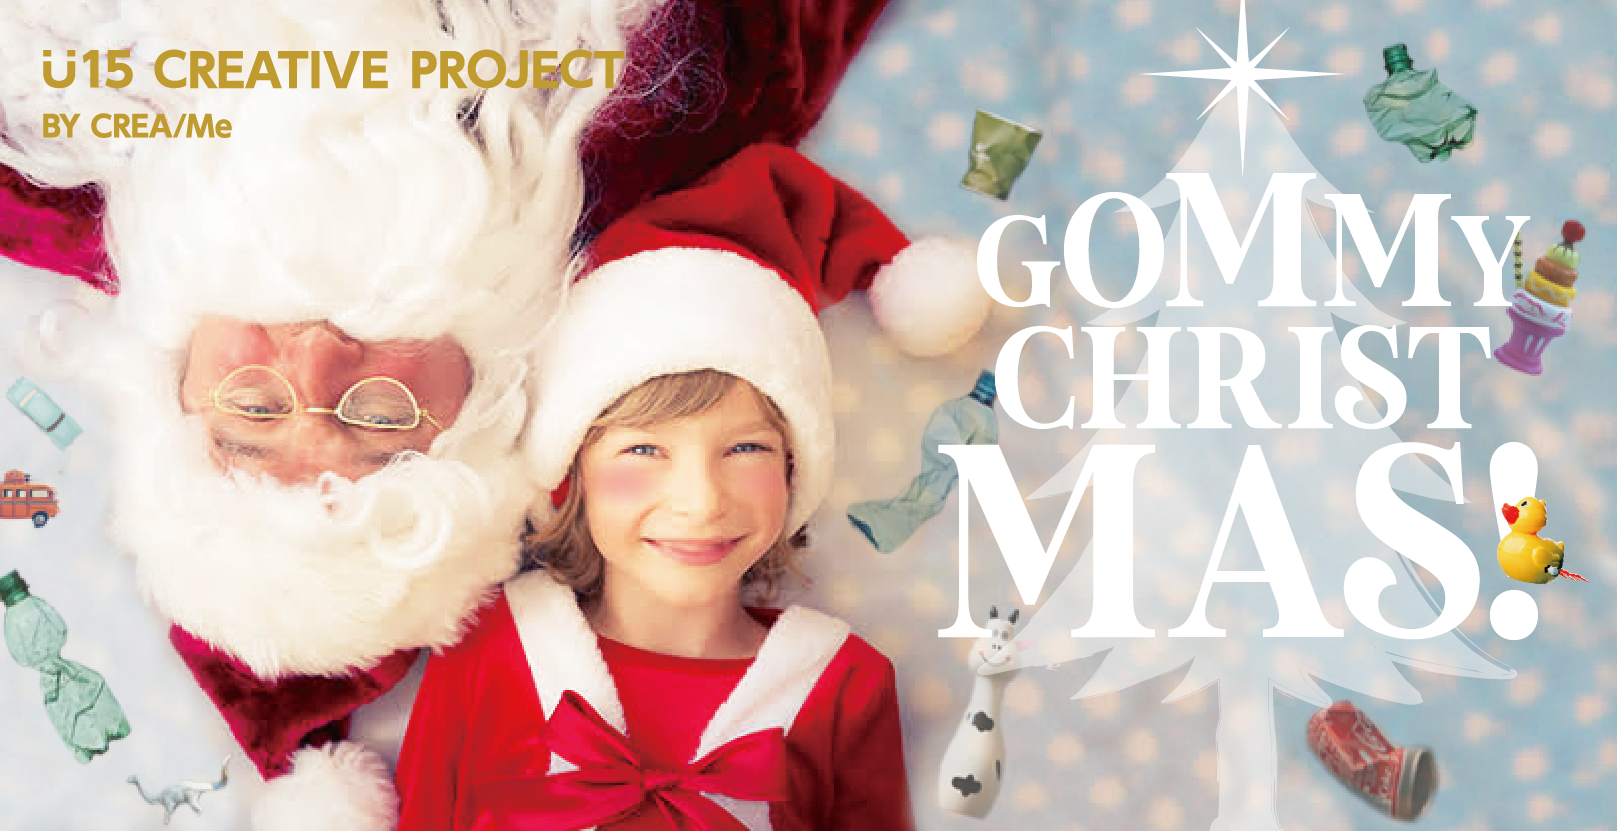 U15 CREATIVE PROJECT 「GOMMY  CHRISTMAS! 廃材でクリスマスツリーを作ろう！！」